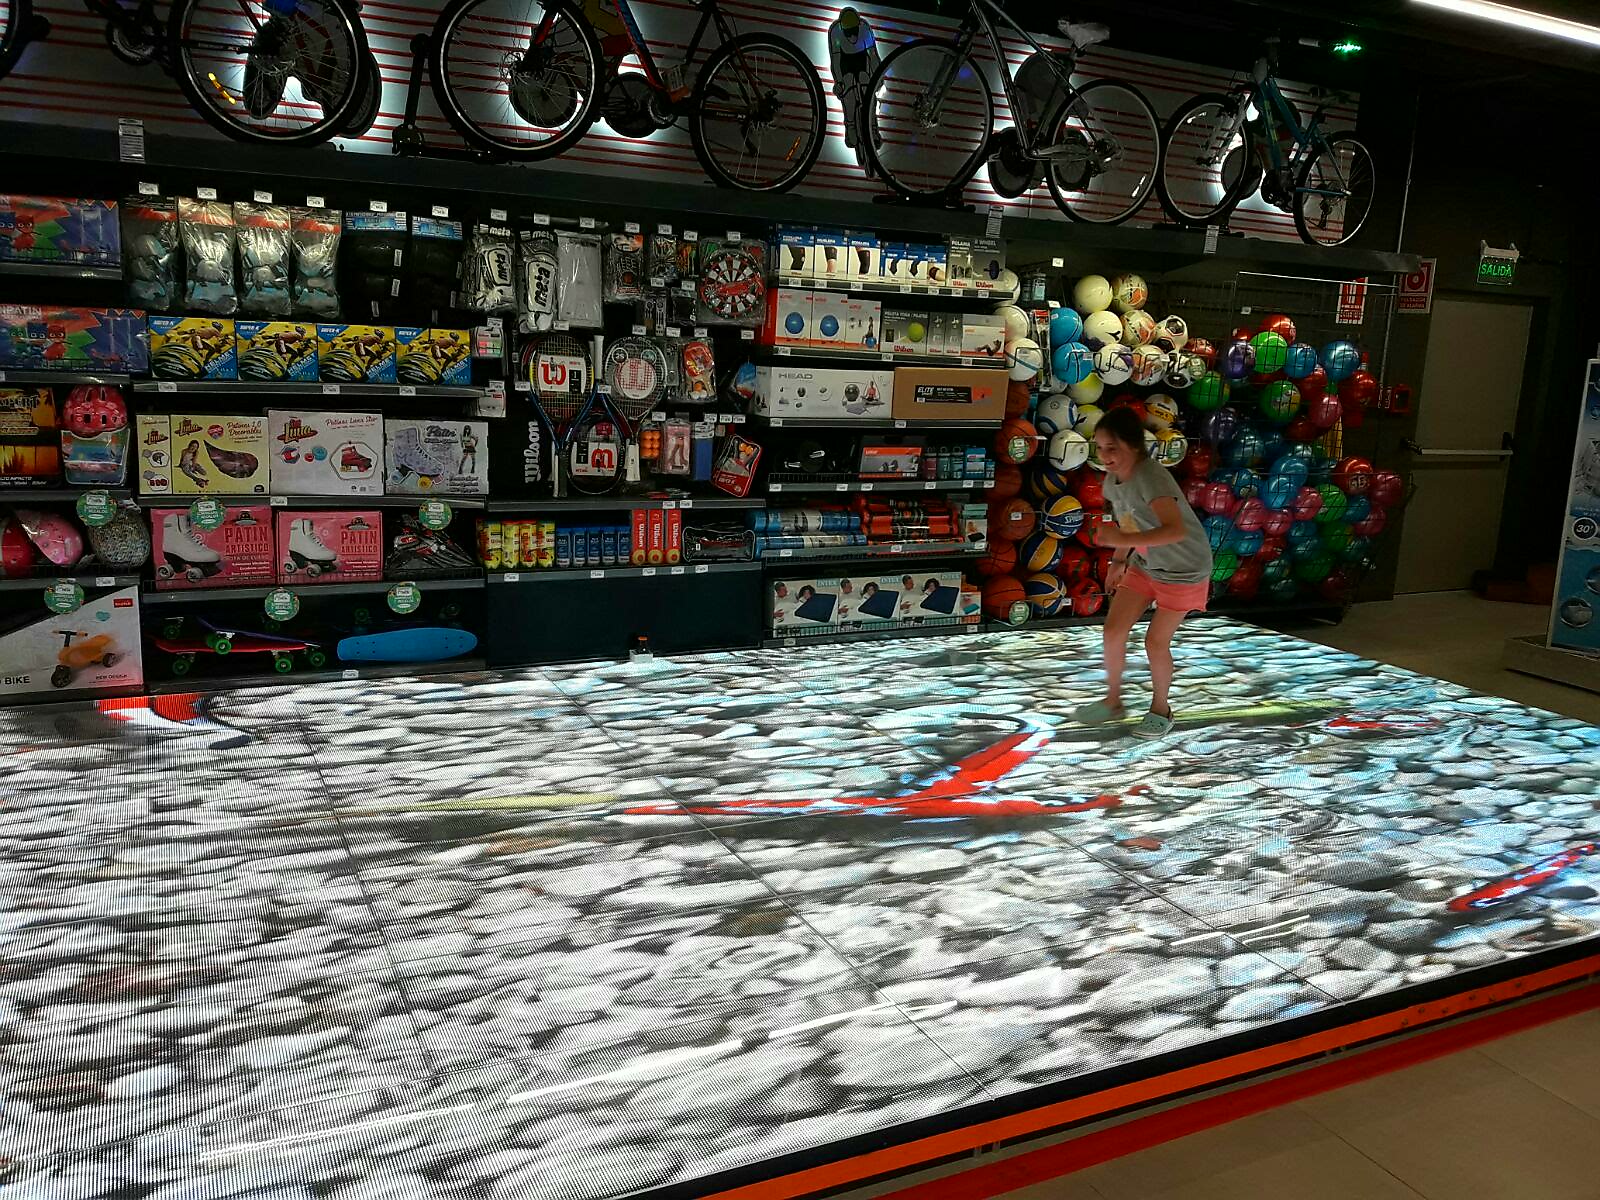 Disco Punta Carretas incorporó un Piso Mágico, una pista led interactiva para los niños